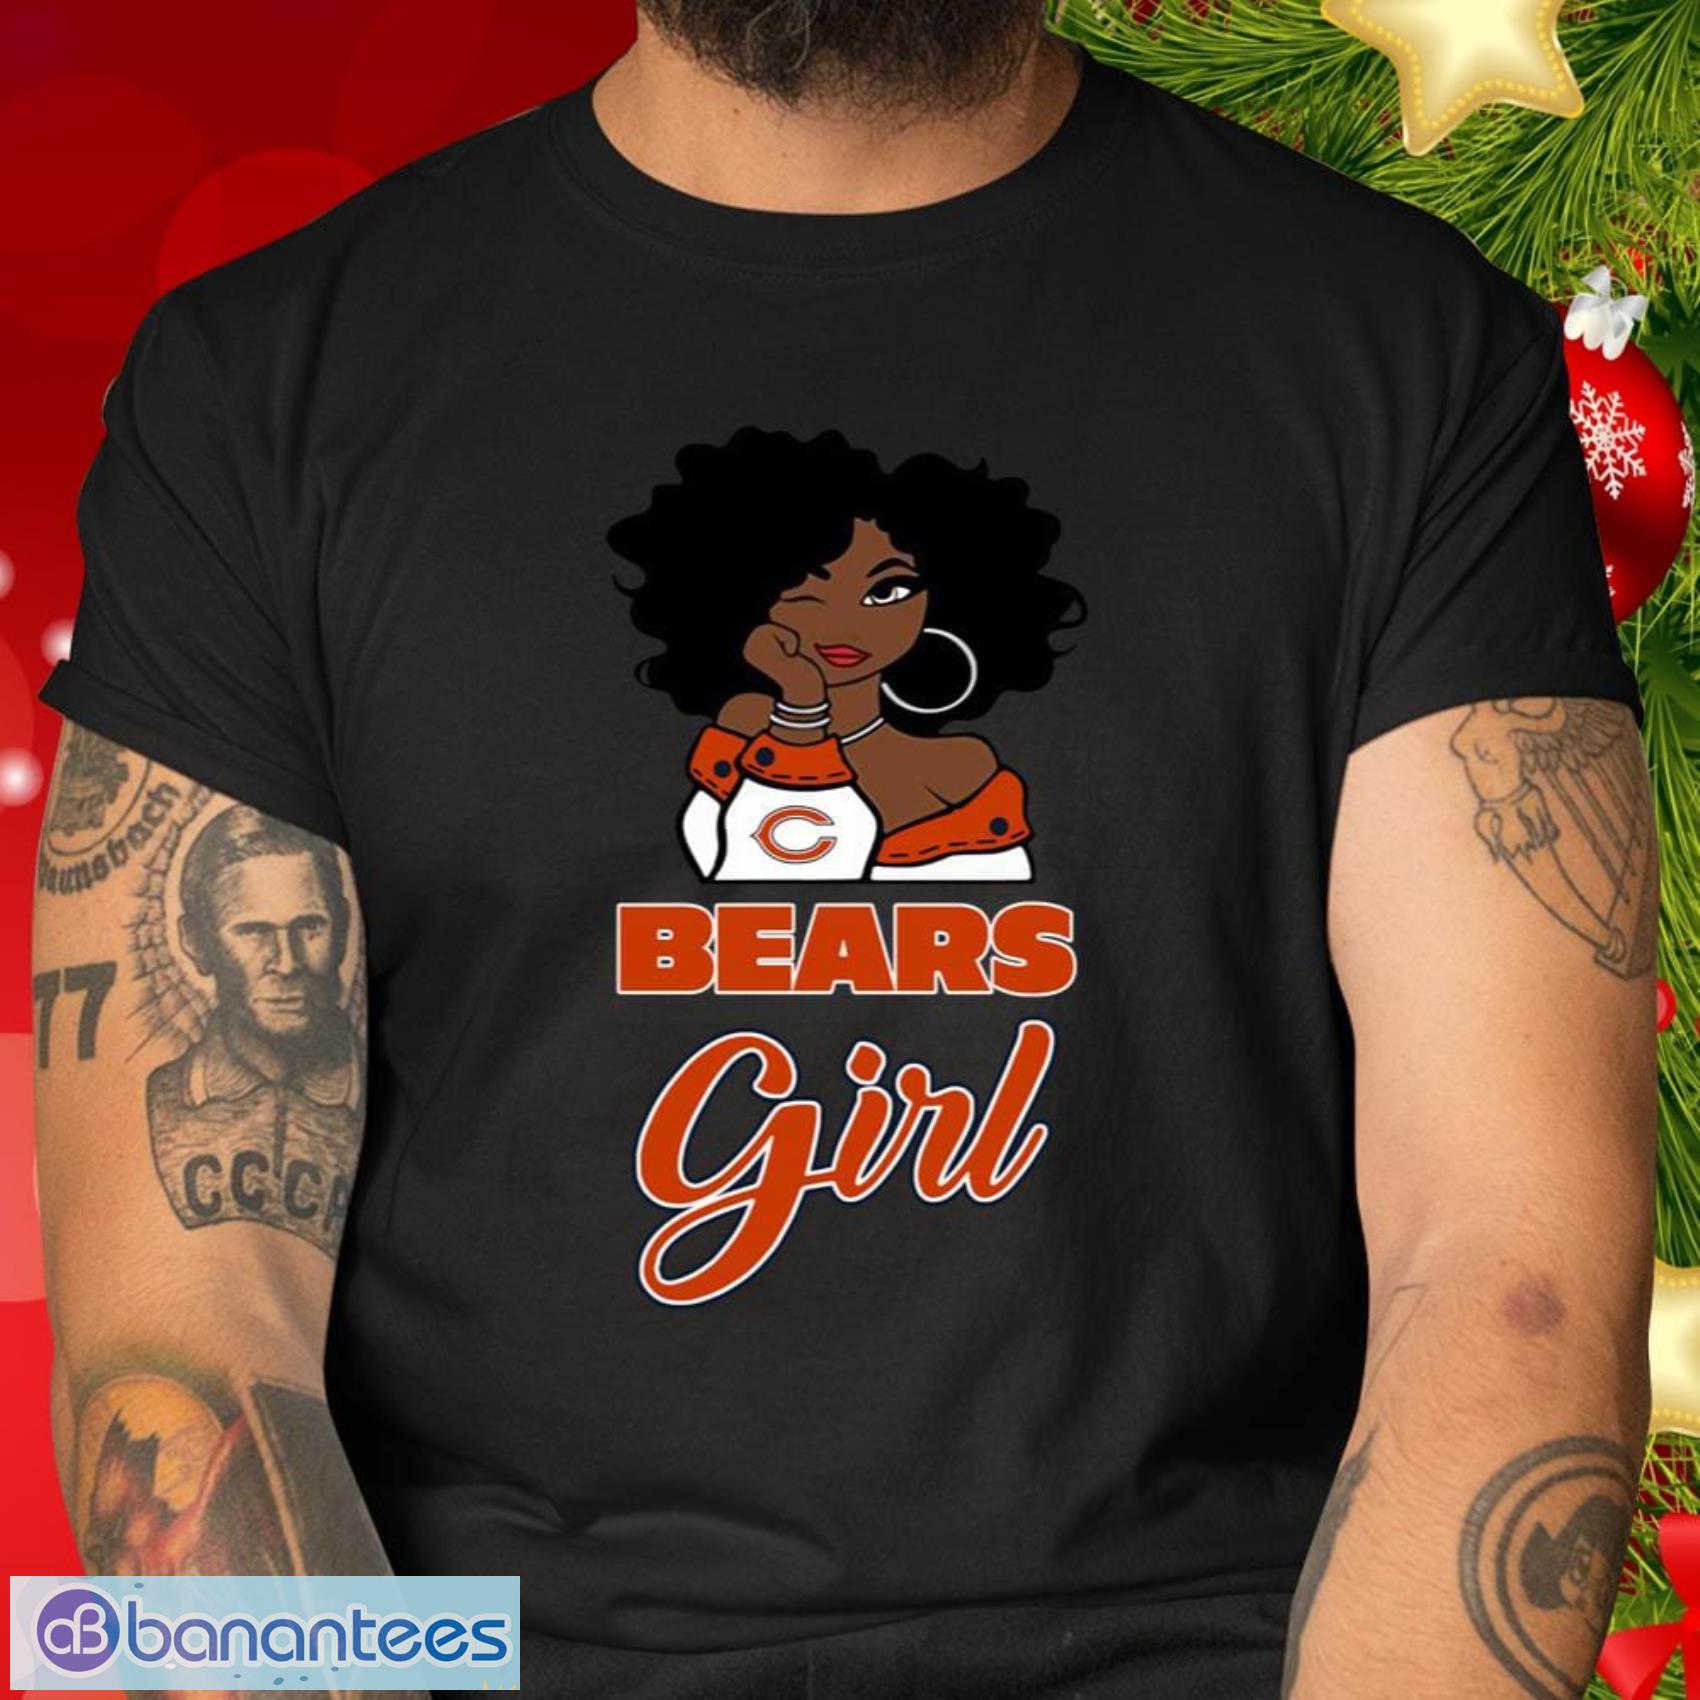 Chicago Bears Girl NFL T Shirt Gift For Sport Teams Fans - Chicago Bears Girl NFL T Shirt_2